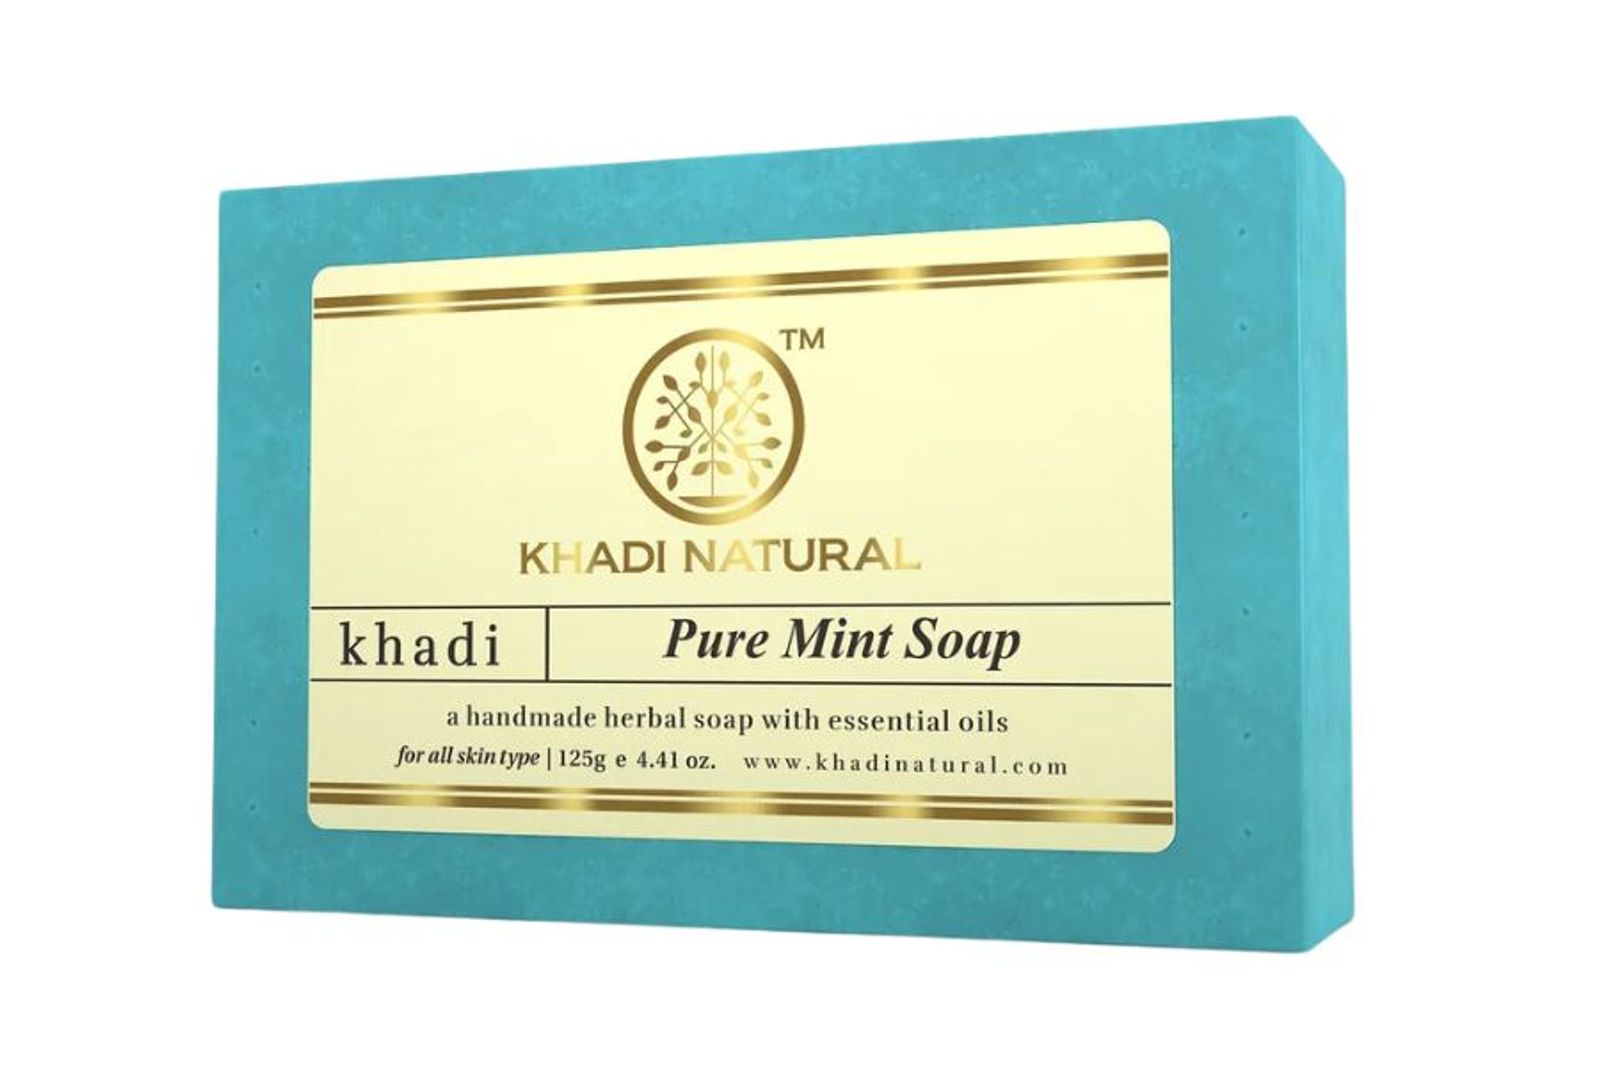 Khadi Natural Pure Mint Soap